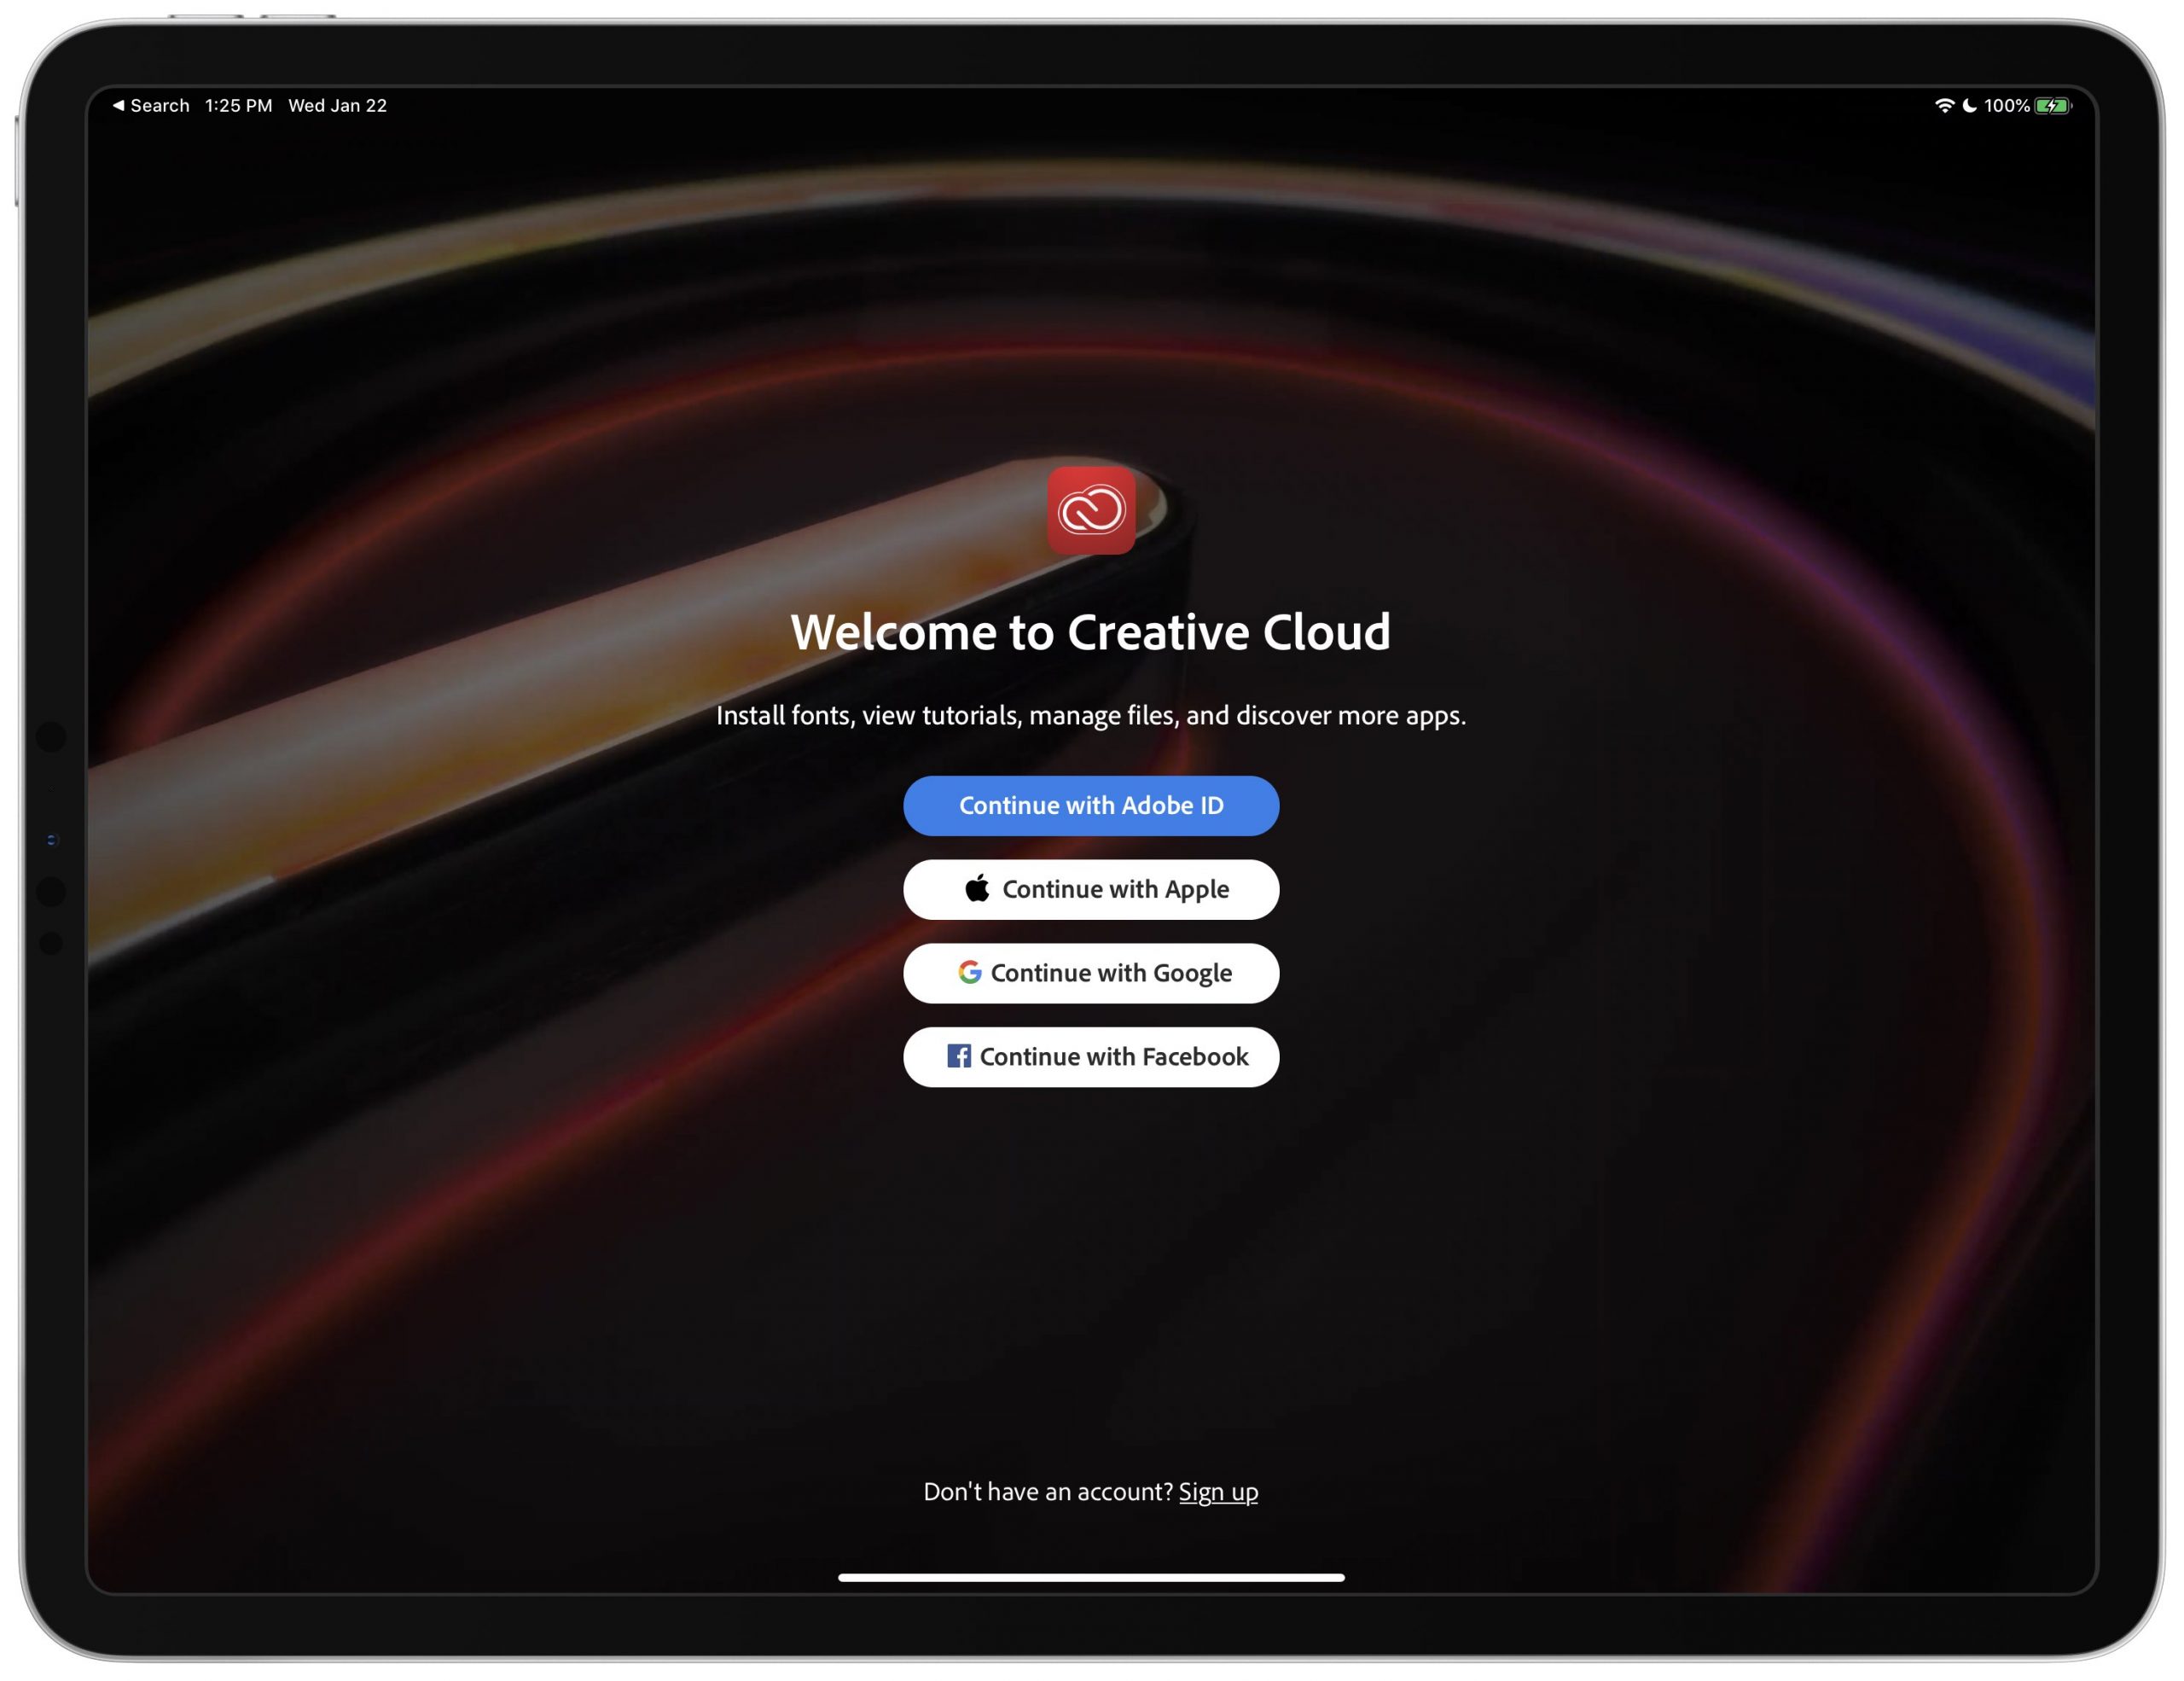 Anda sekarang dapat mengakses Adobe Creative Cloud melalui Sign-in yang menjaga privasi dengan Apple pilihan 2